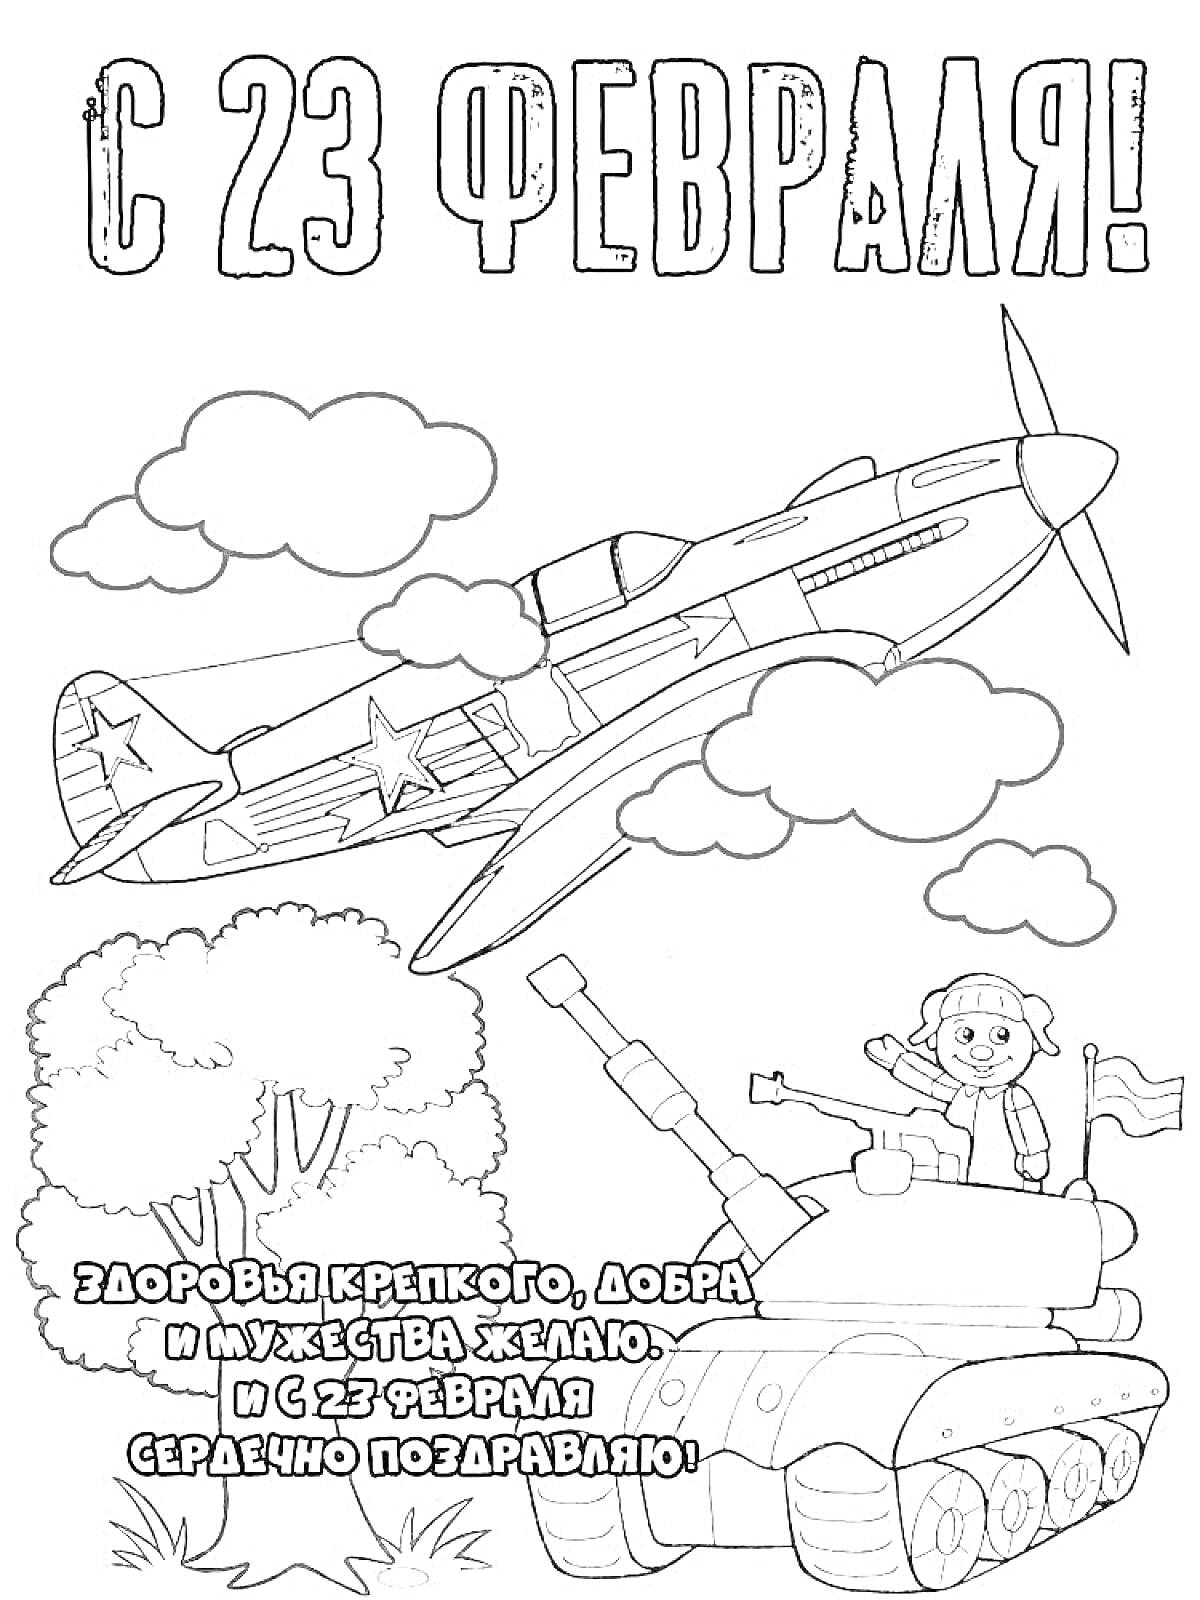 Раскраска Самолет в небе, танк с солдатом и дерево на фоне поздравительной надписи к 23 февраля